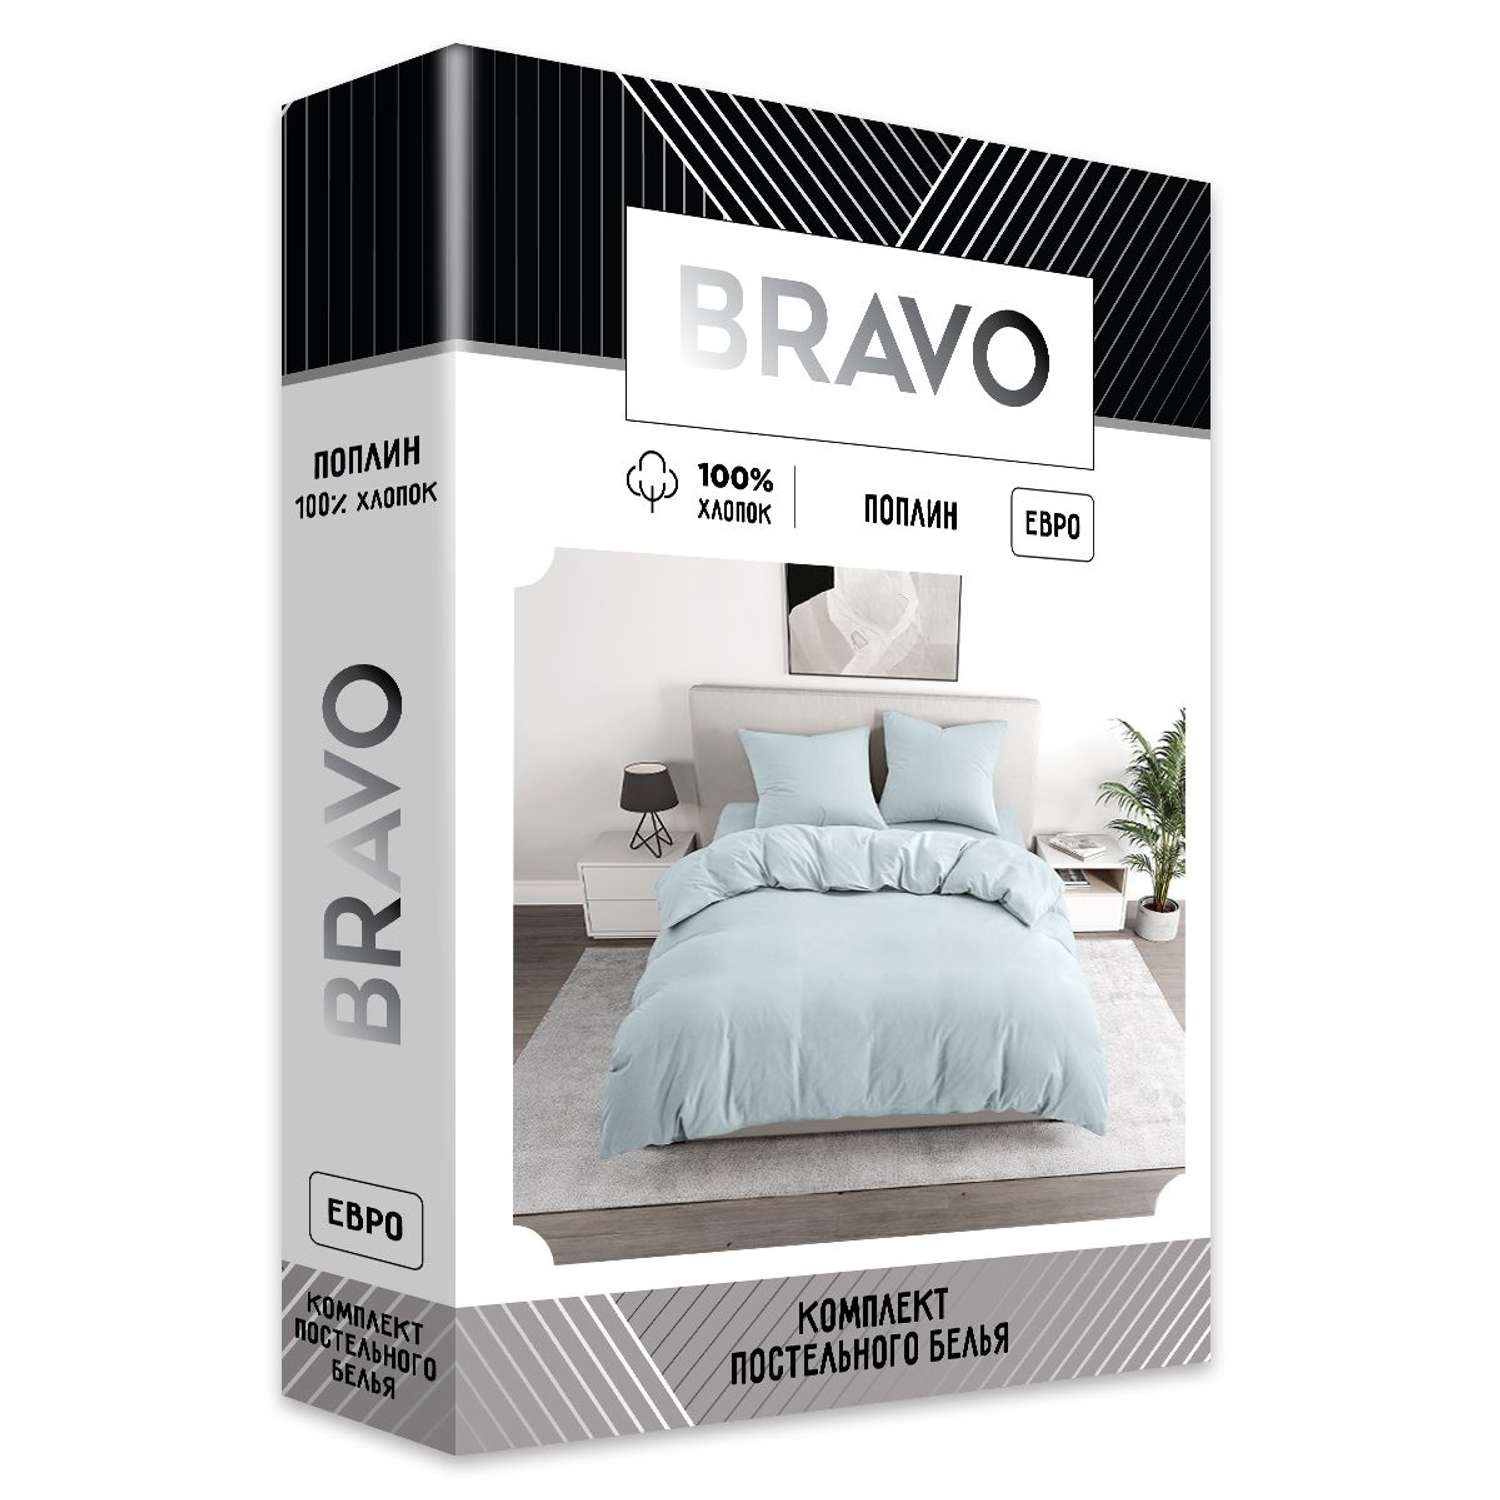 Комплект постельного белья BRAVO евро наволочки 70х70 рис.5835-1 голубой - фото 5